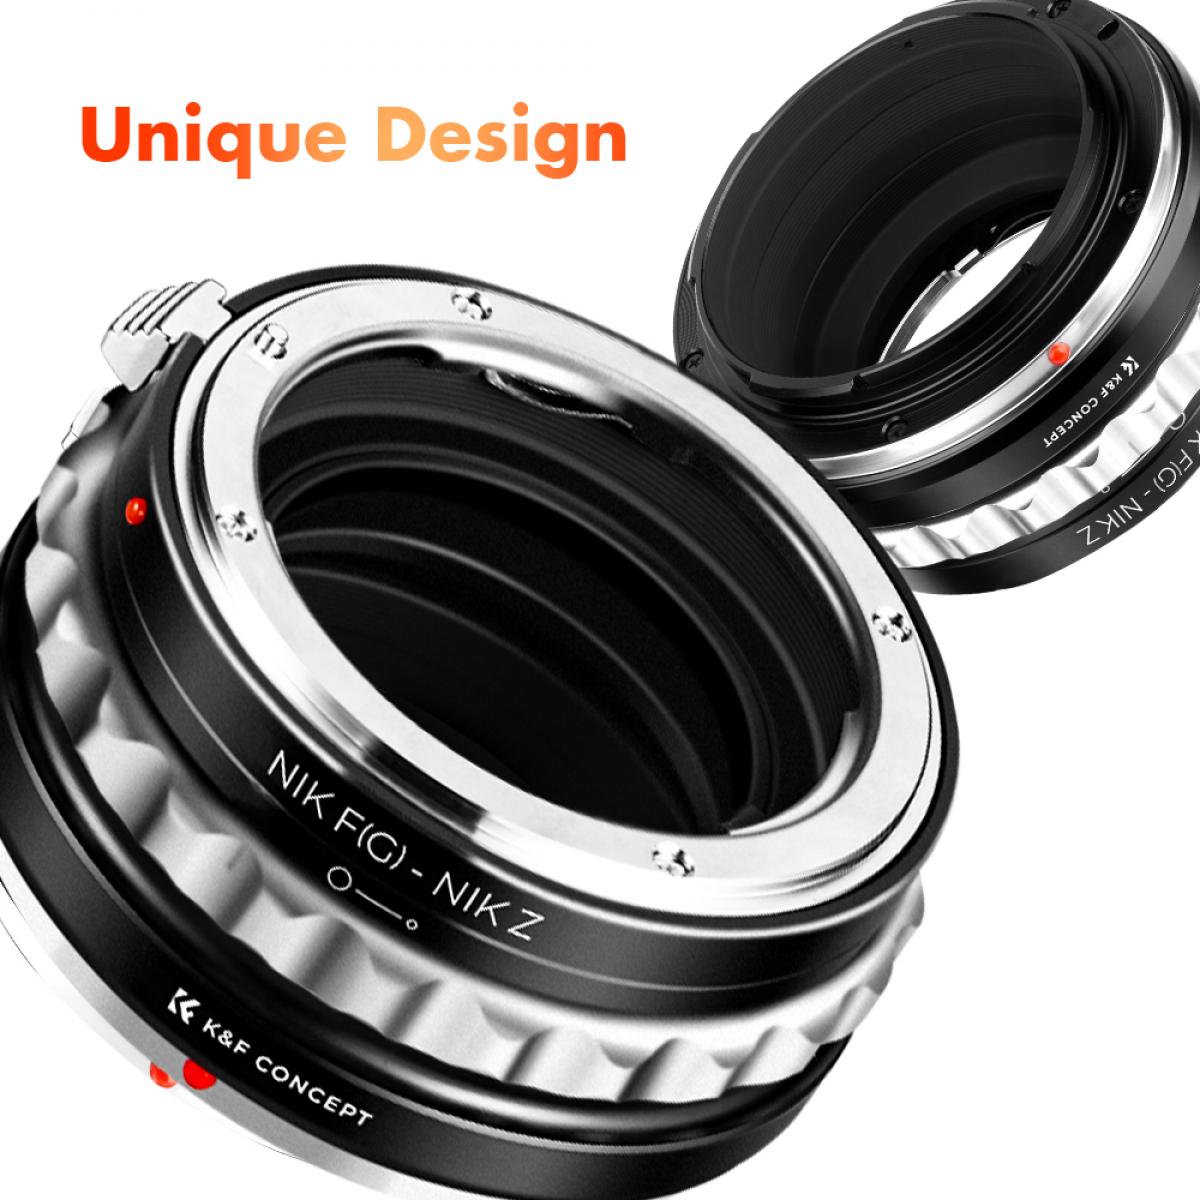 G AF-S Mount Lens to Nikon Z6 Z7 Camera K&F Concept Lens Mount Adapter